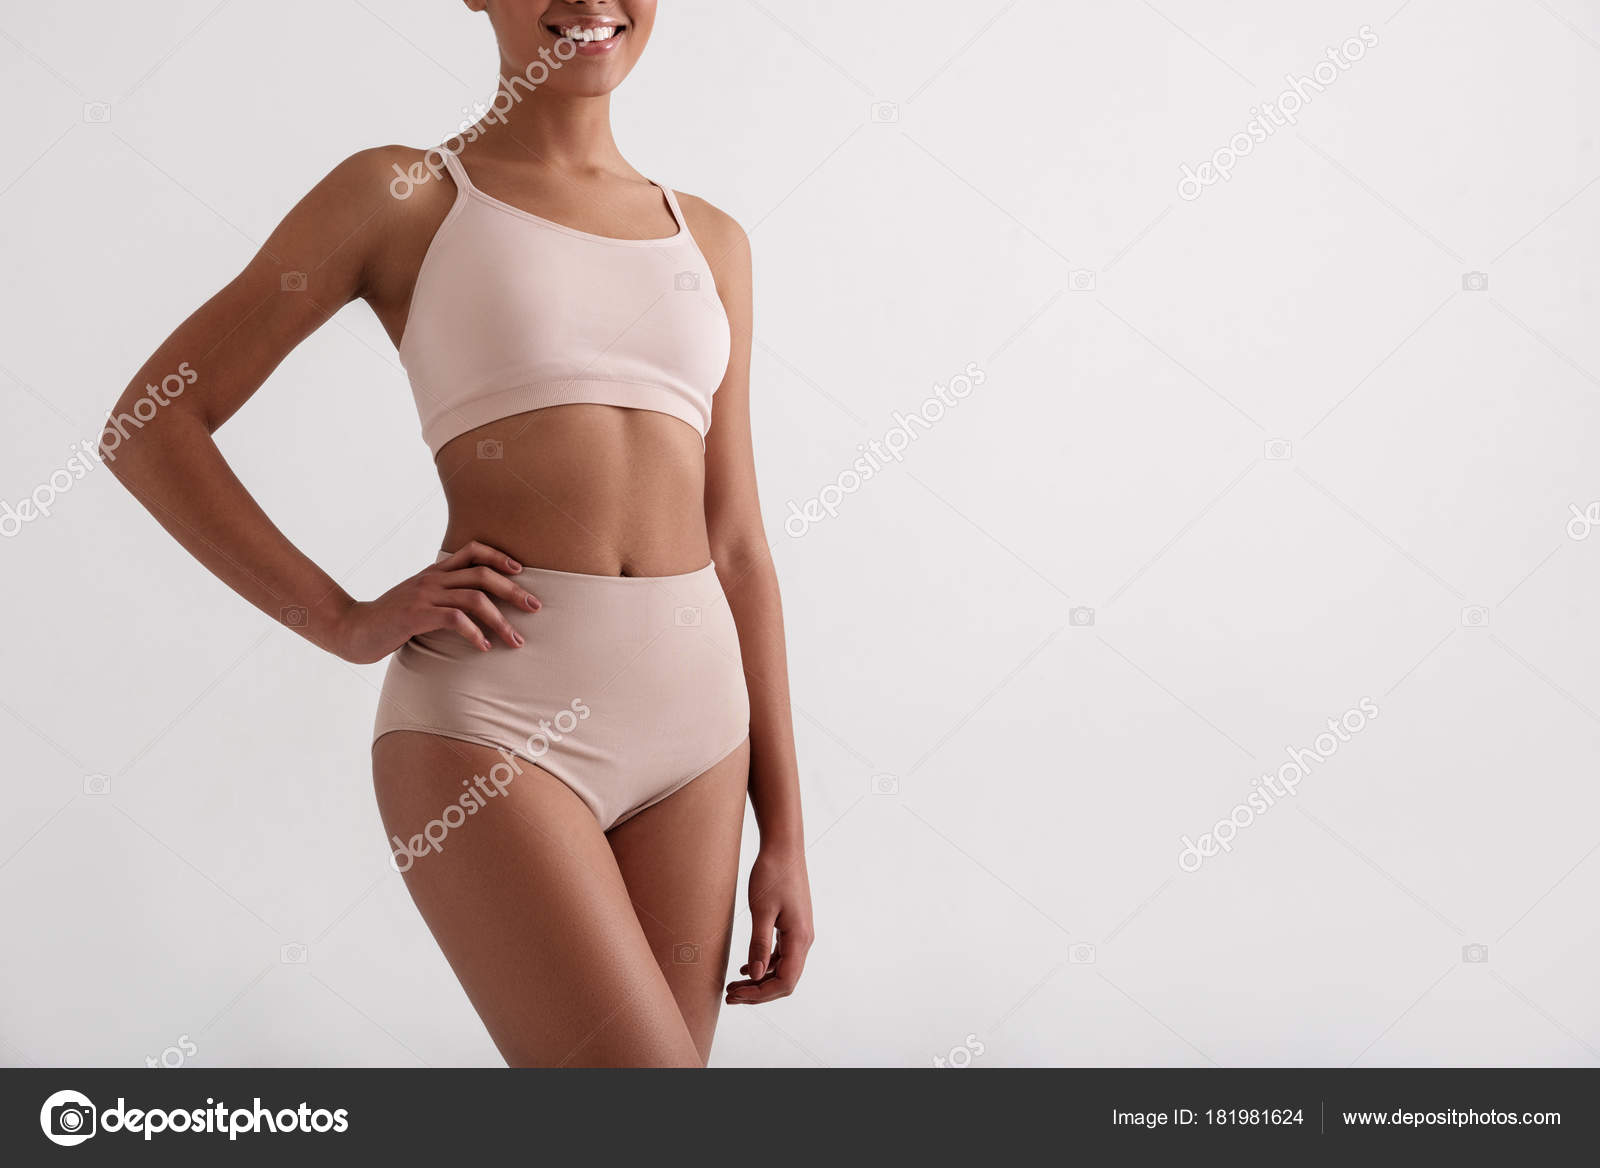 https://st3.depositphotos.com/4232343/18198/i/1600/depositphotos_181981624-stock-photo-healthy-slender-girl-posing-in.jpg